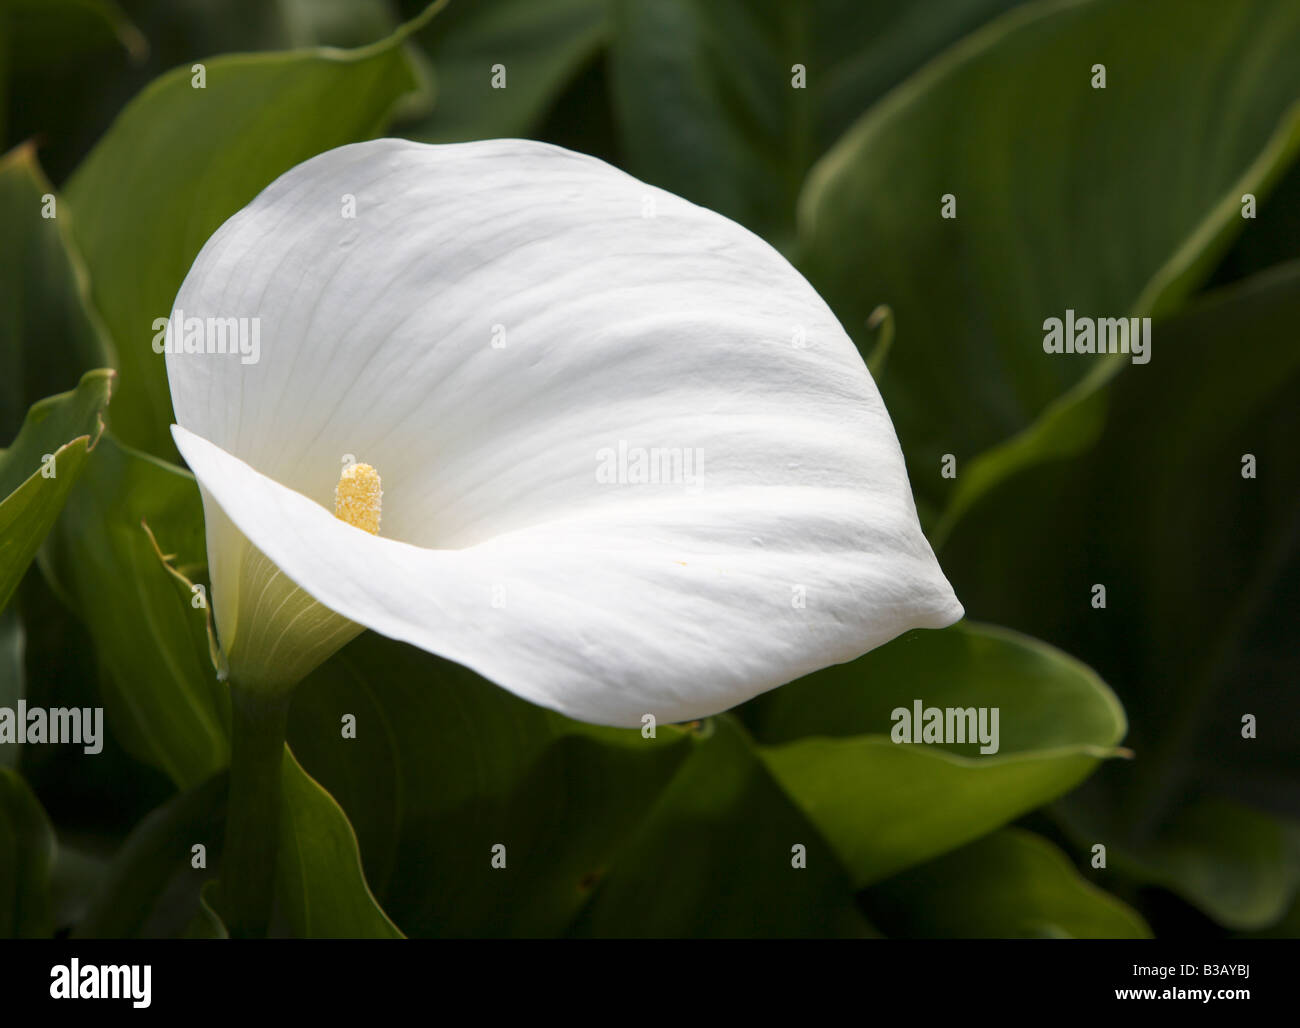 Zantedeschia aethiopica Crowborough, Arum lily Stock Photo